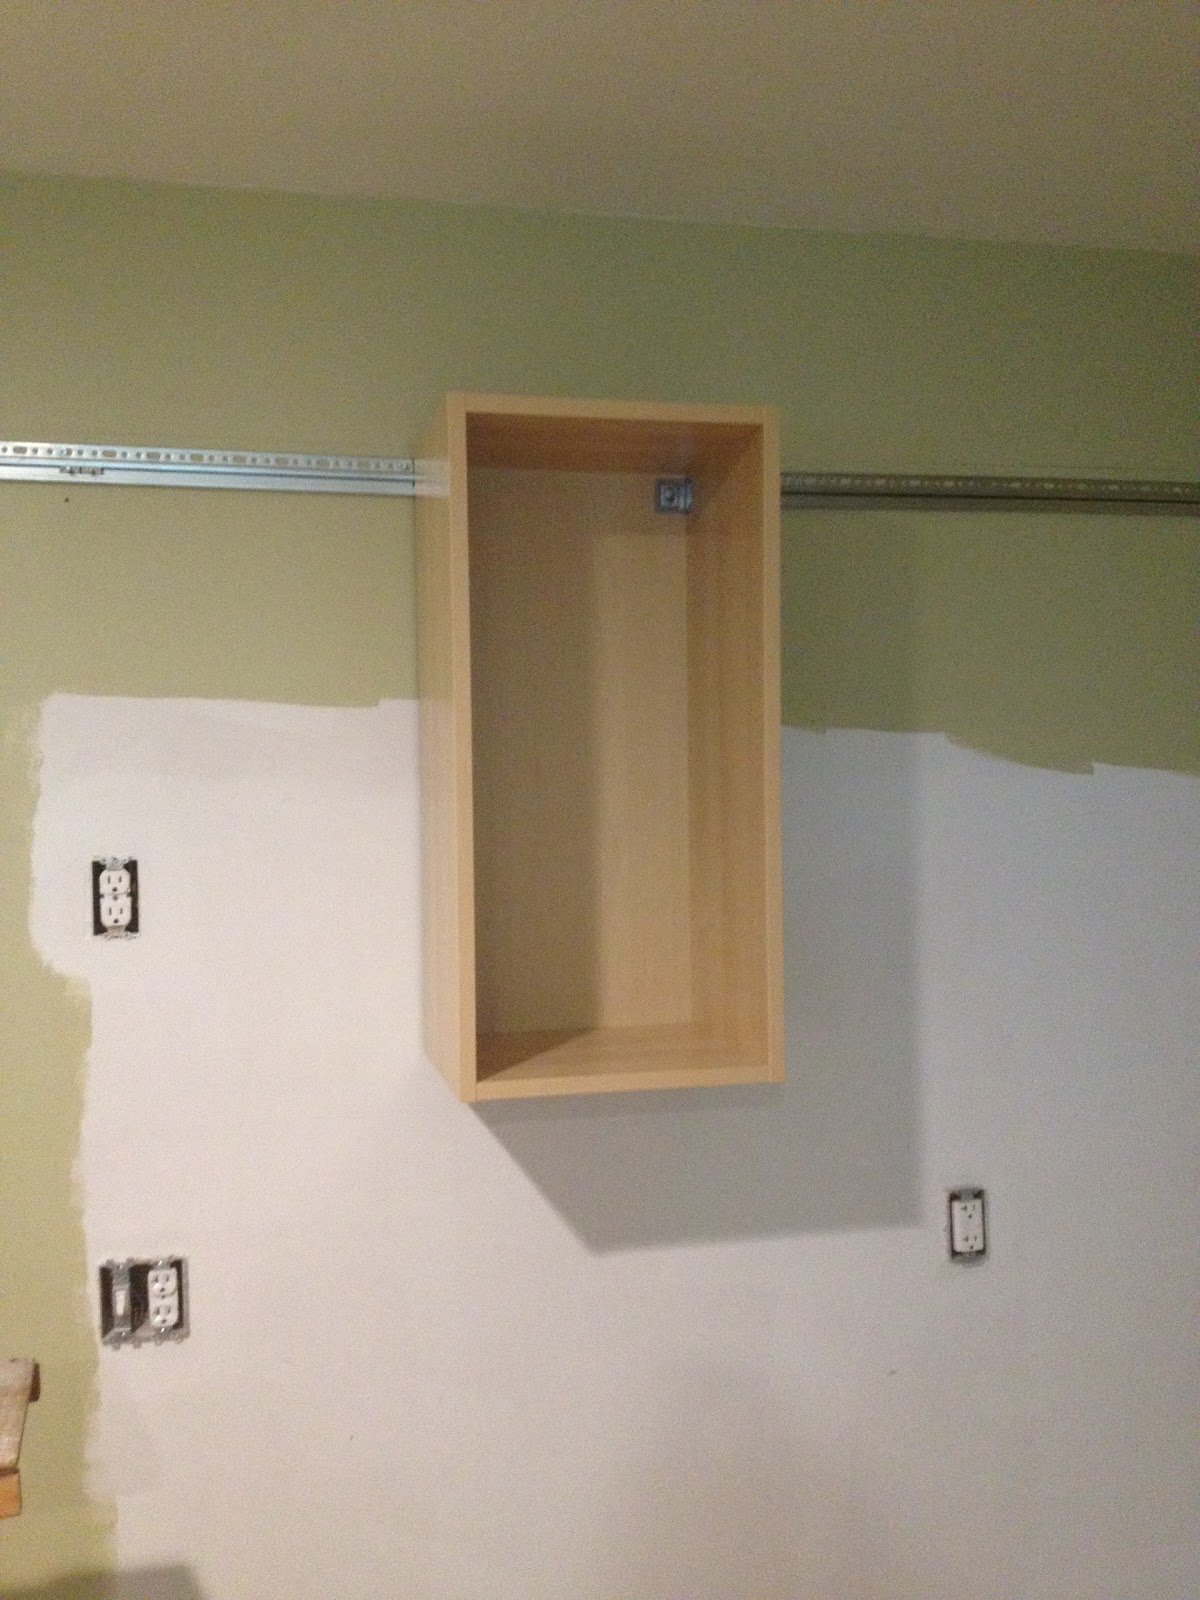  повесить на стену шкаф: крепление на монтажную рейку на стену из .